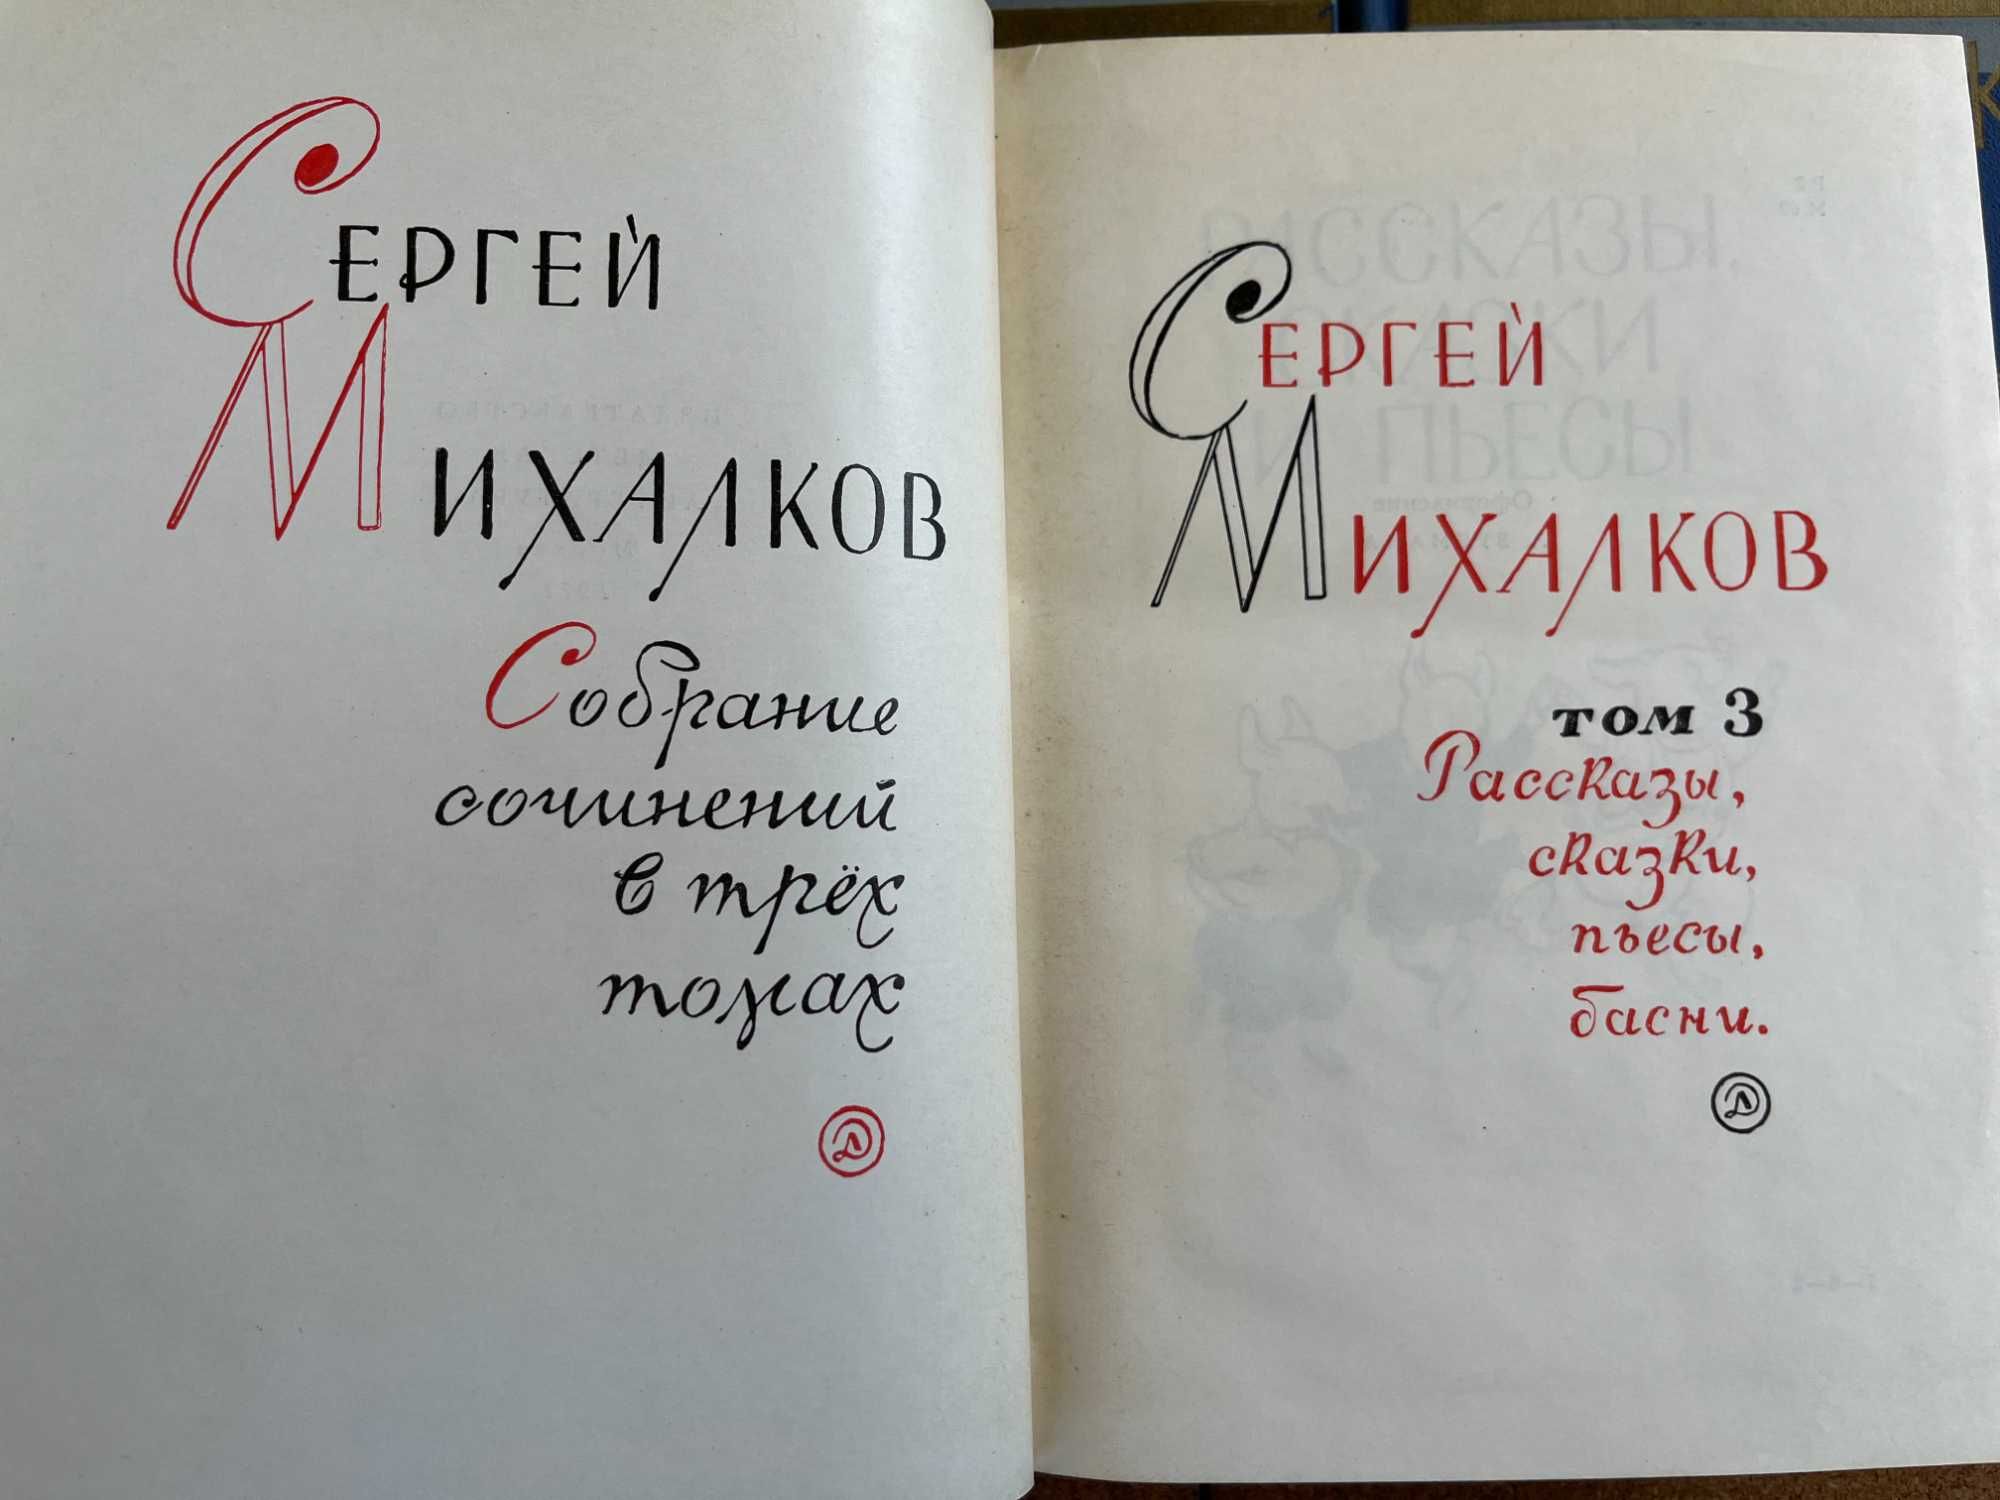 Сергей Михалков  "Собрание сочинений  в 3 т" ,  1970 г